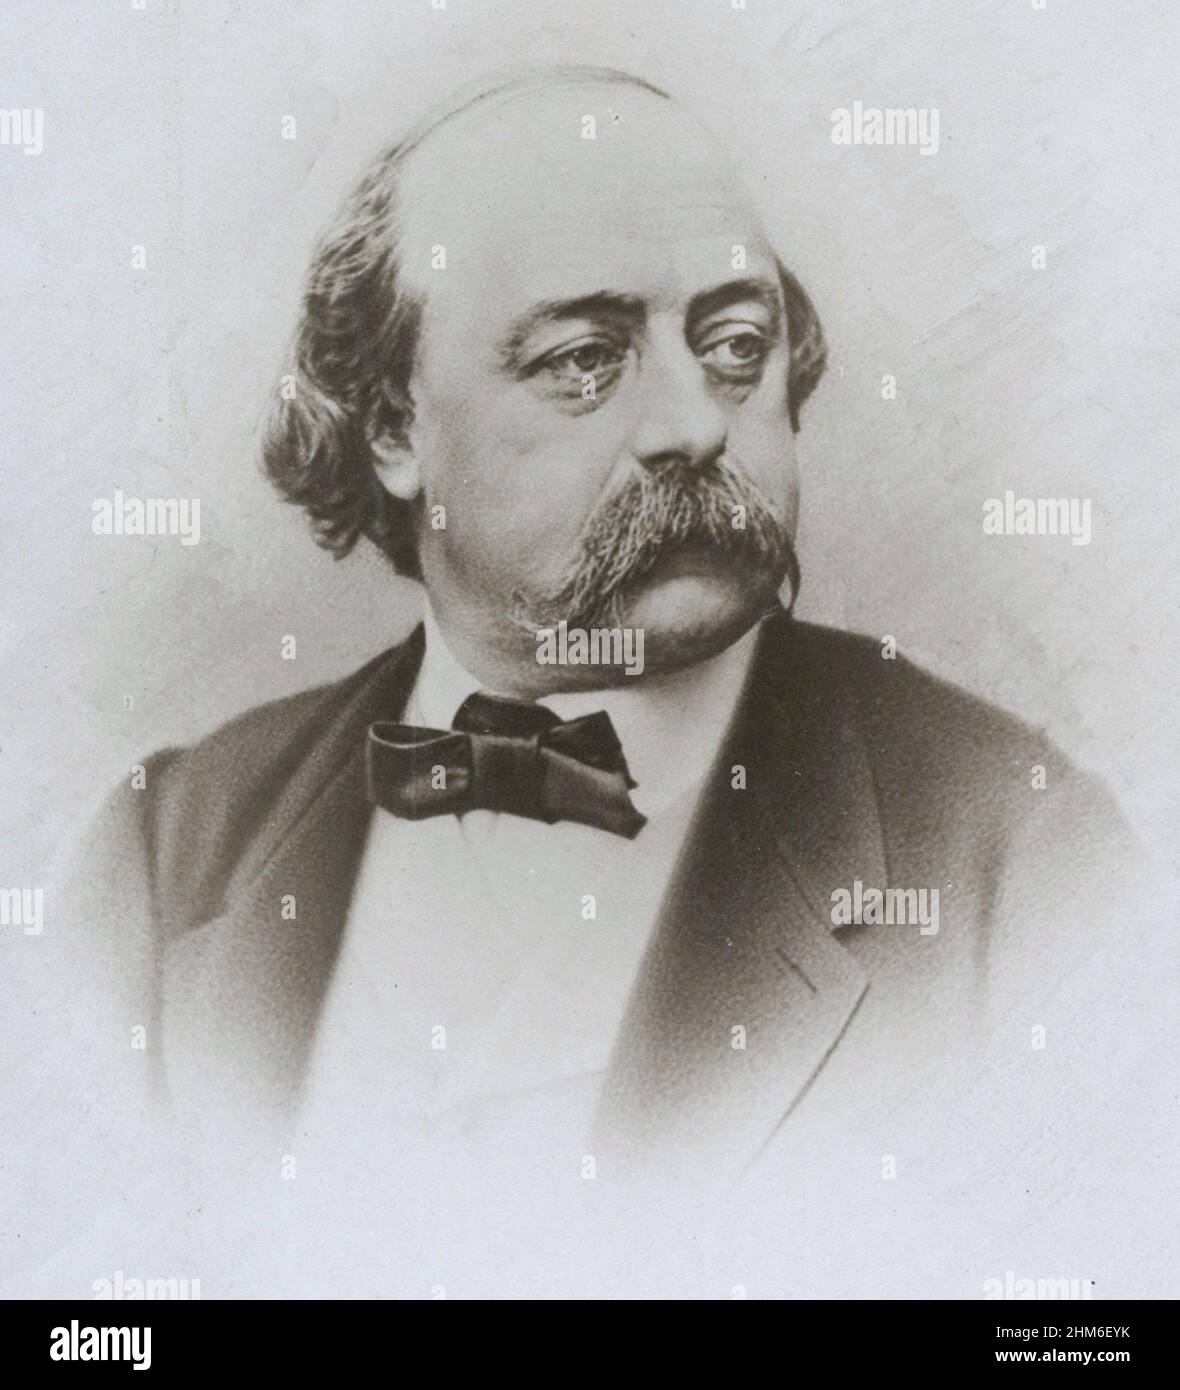 Retrato del escritor francés Gustave Flaubert, autor de Madame Bovary, desde 1865, cuando tenía 44 años. Foto de stock